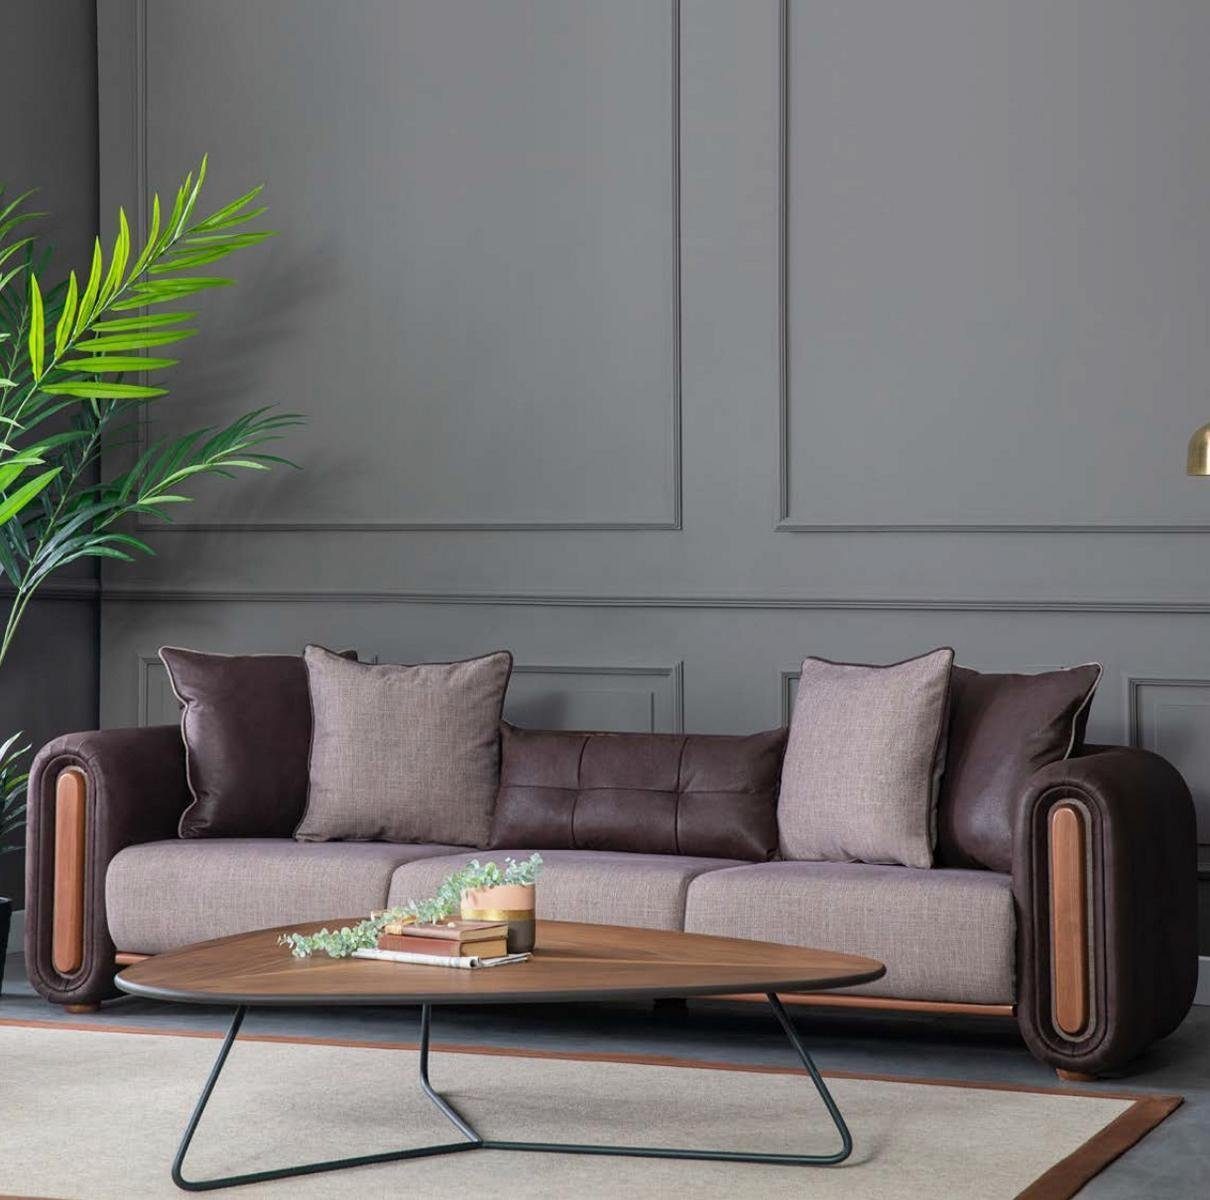 JVmoebel Chesterfield-Sofa Luxus Sofagarnitur Einrichtung Möbel Design Couch Polster